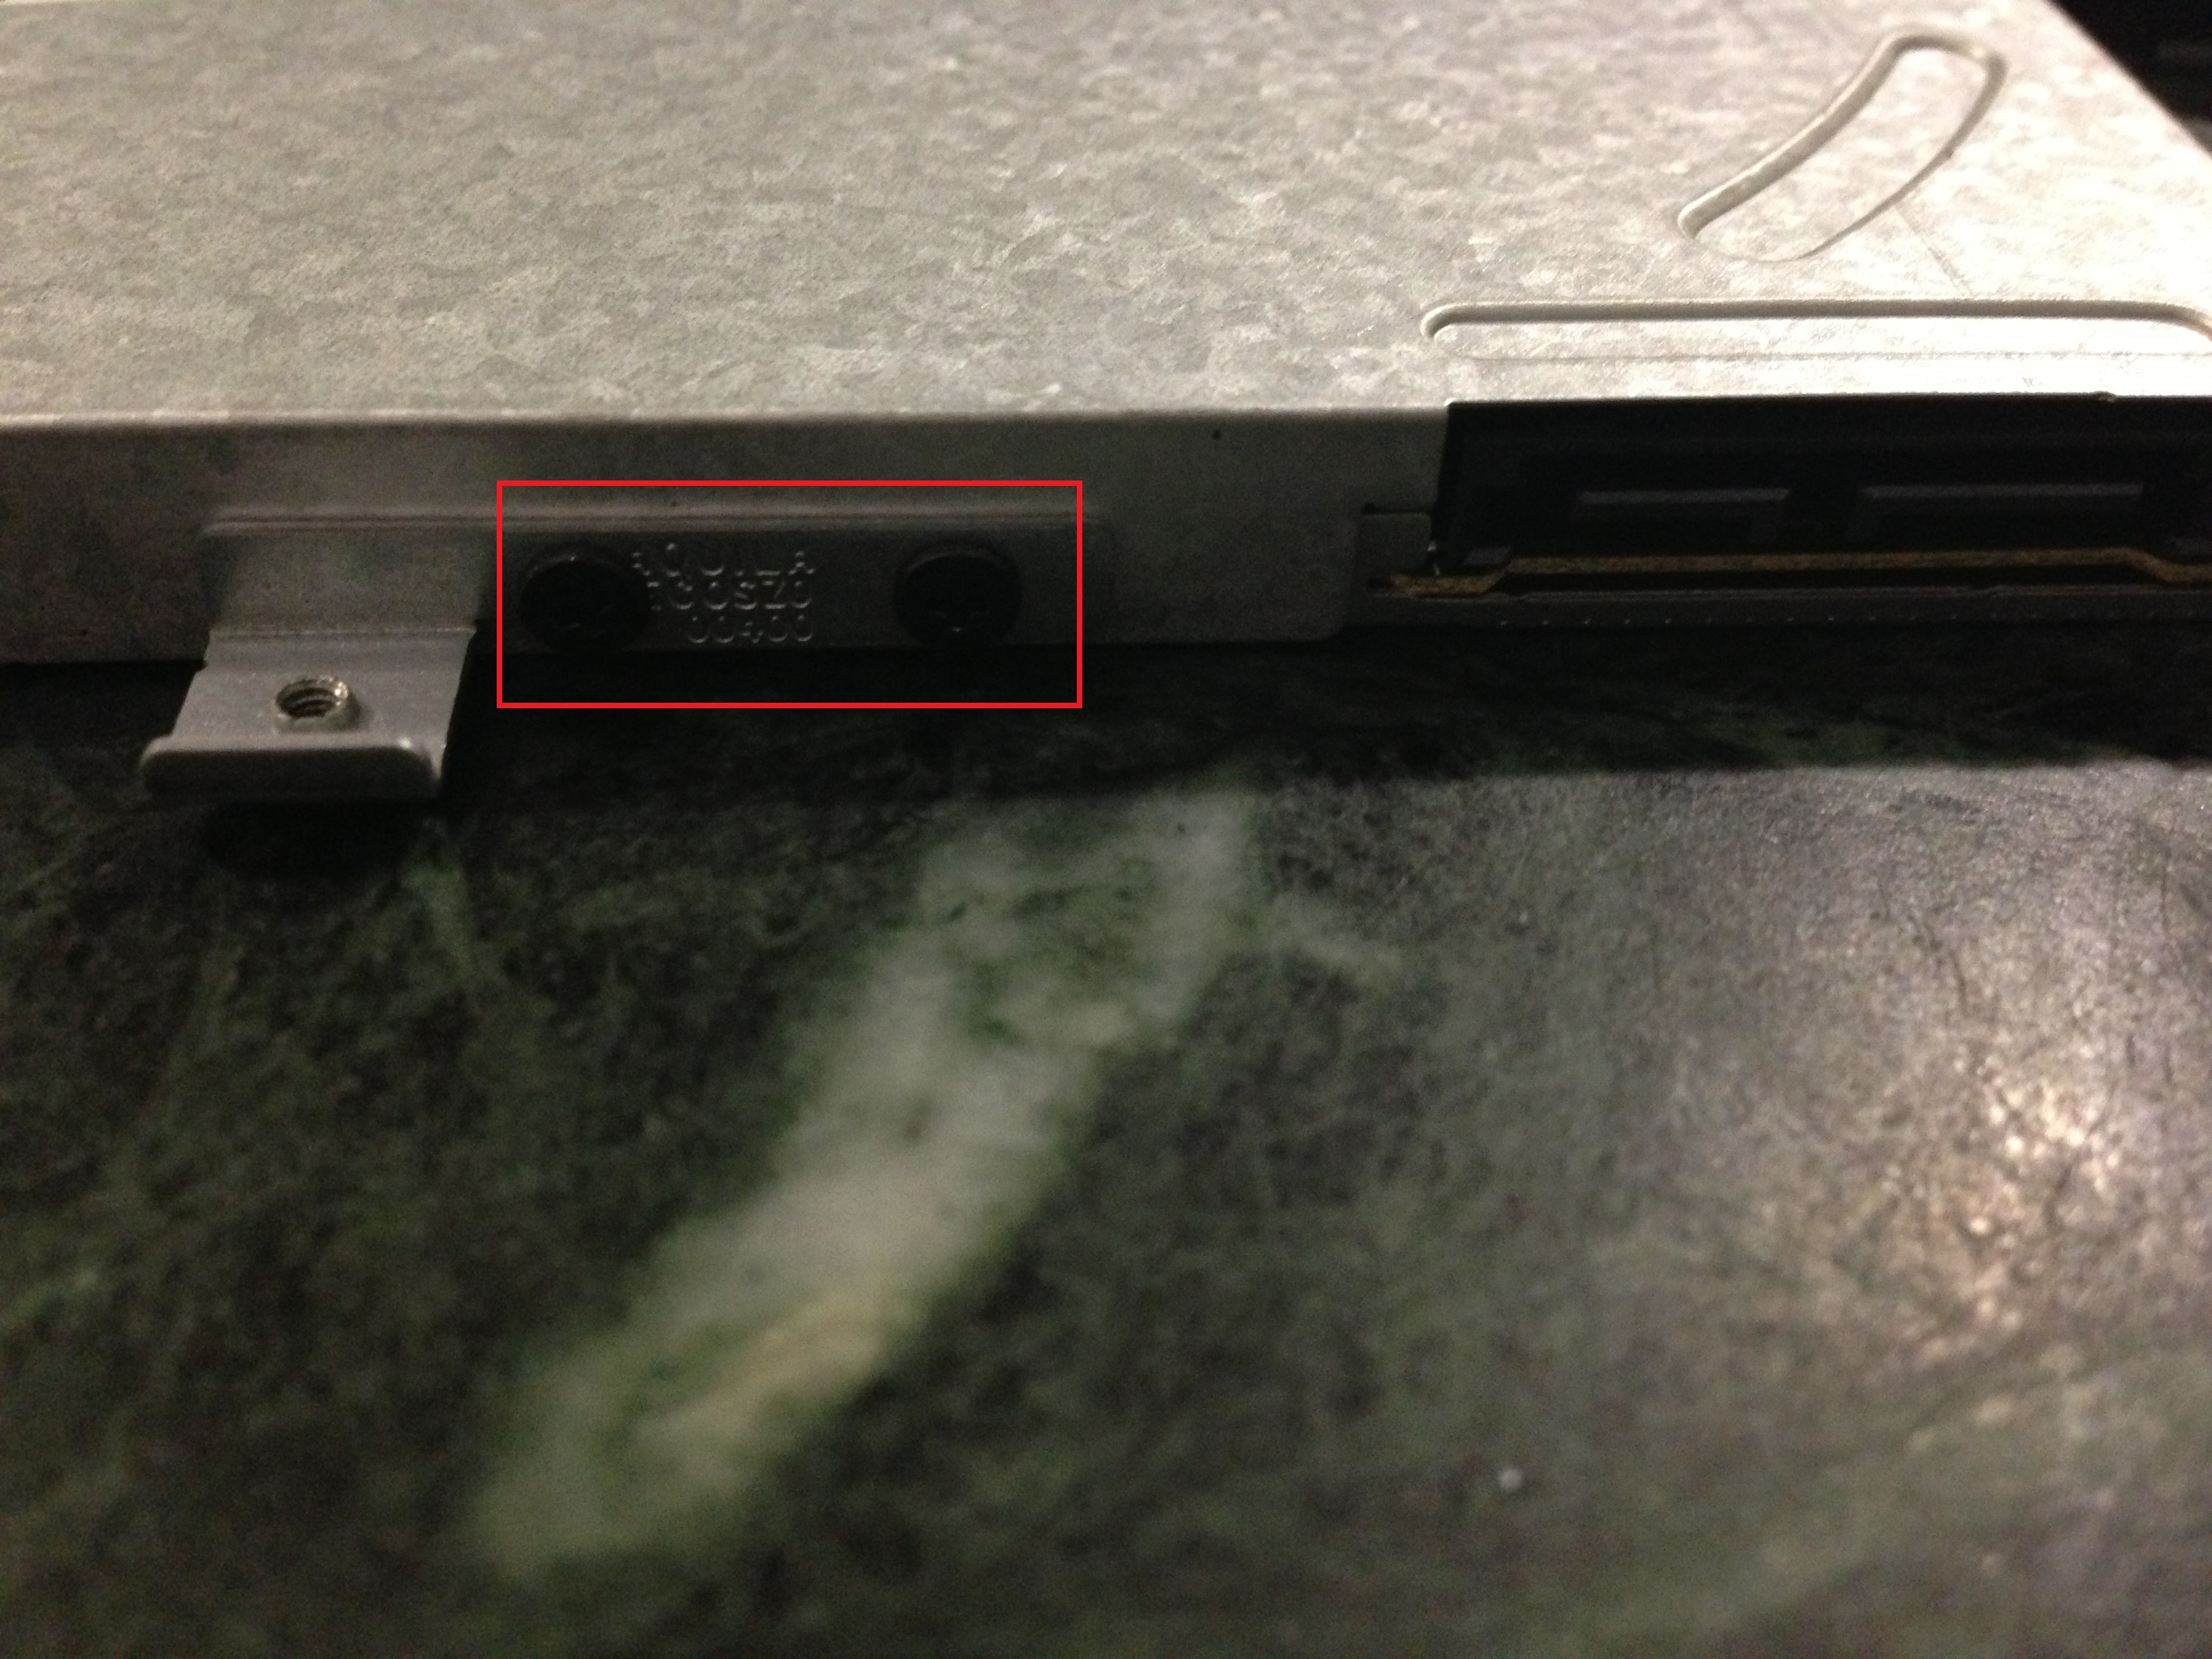 פירוג העיגון מהכונן האופטי והרכבתו במגירת ה-SSD